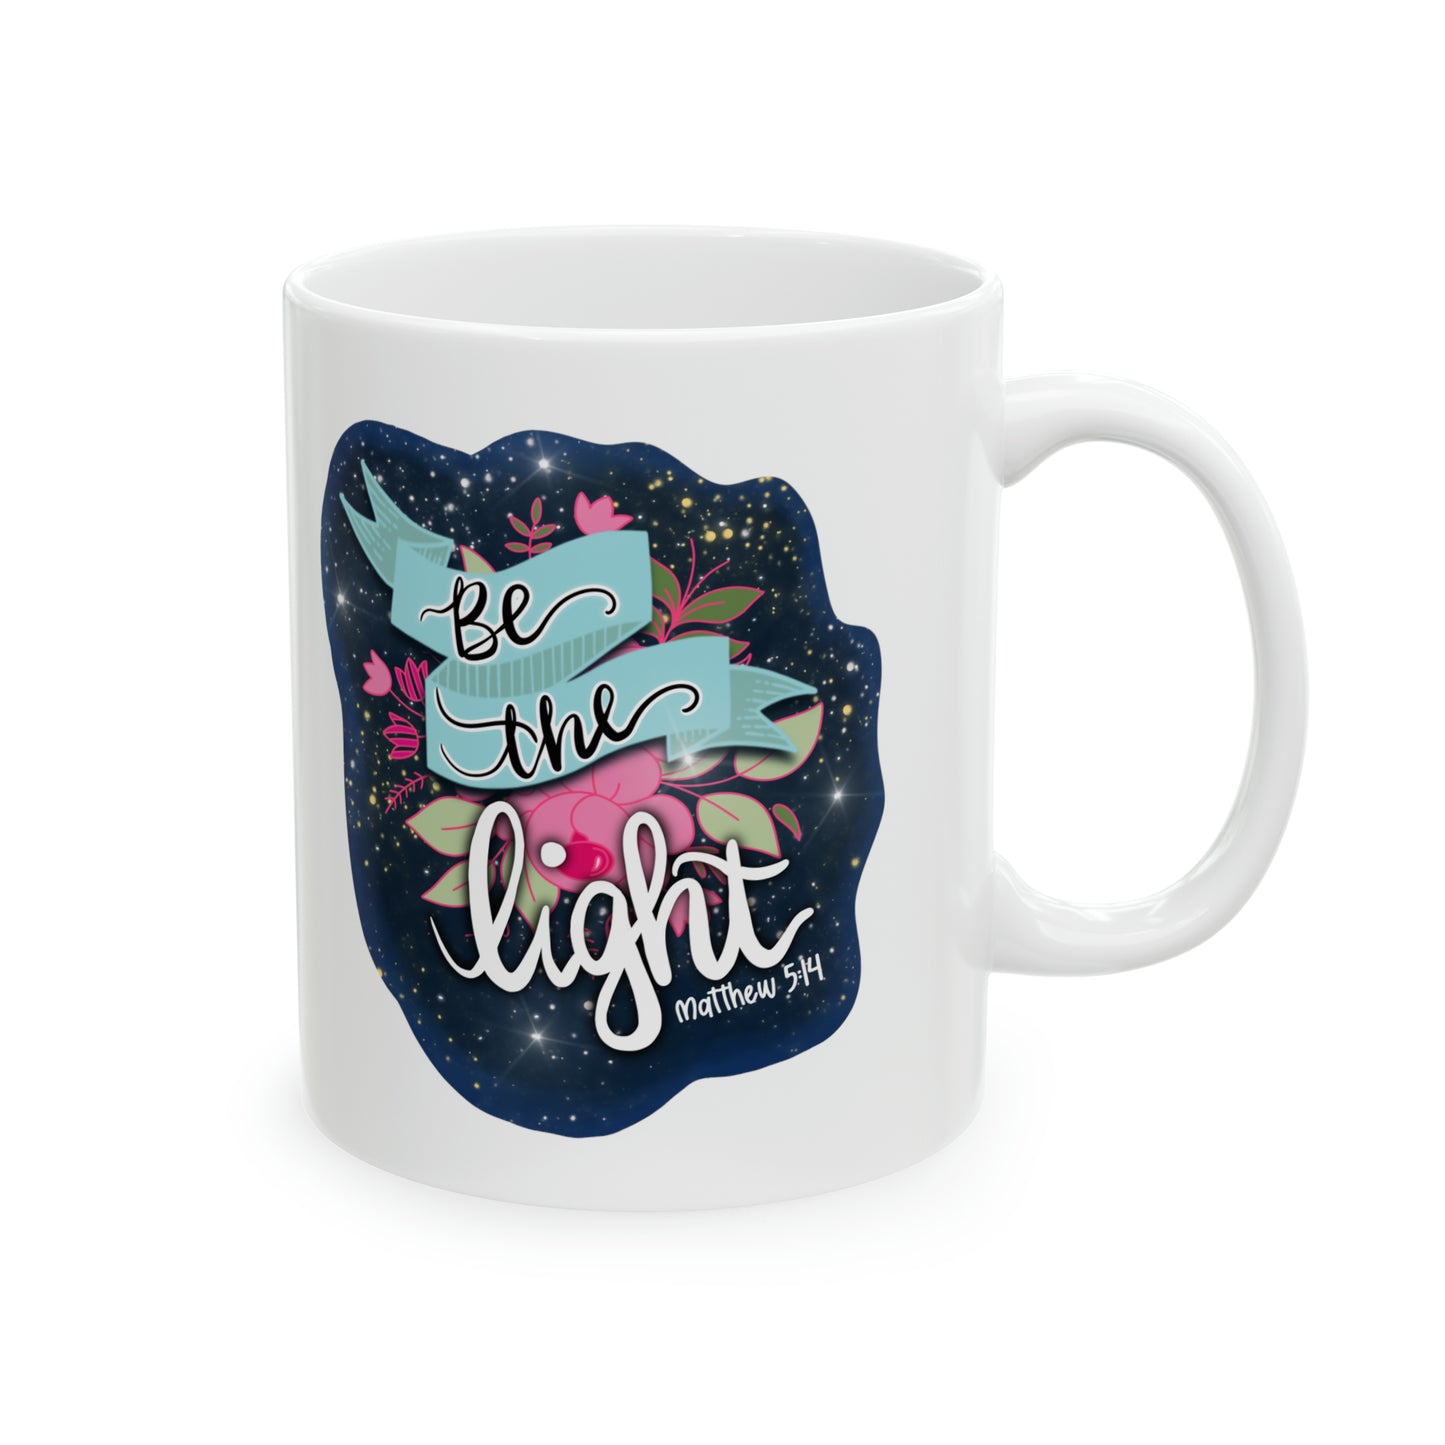 Be The Light Design Ceramic Mug, 11oz